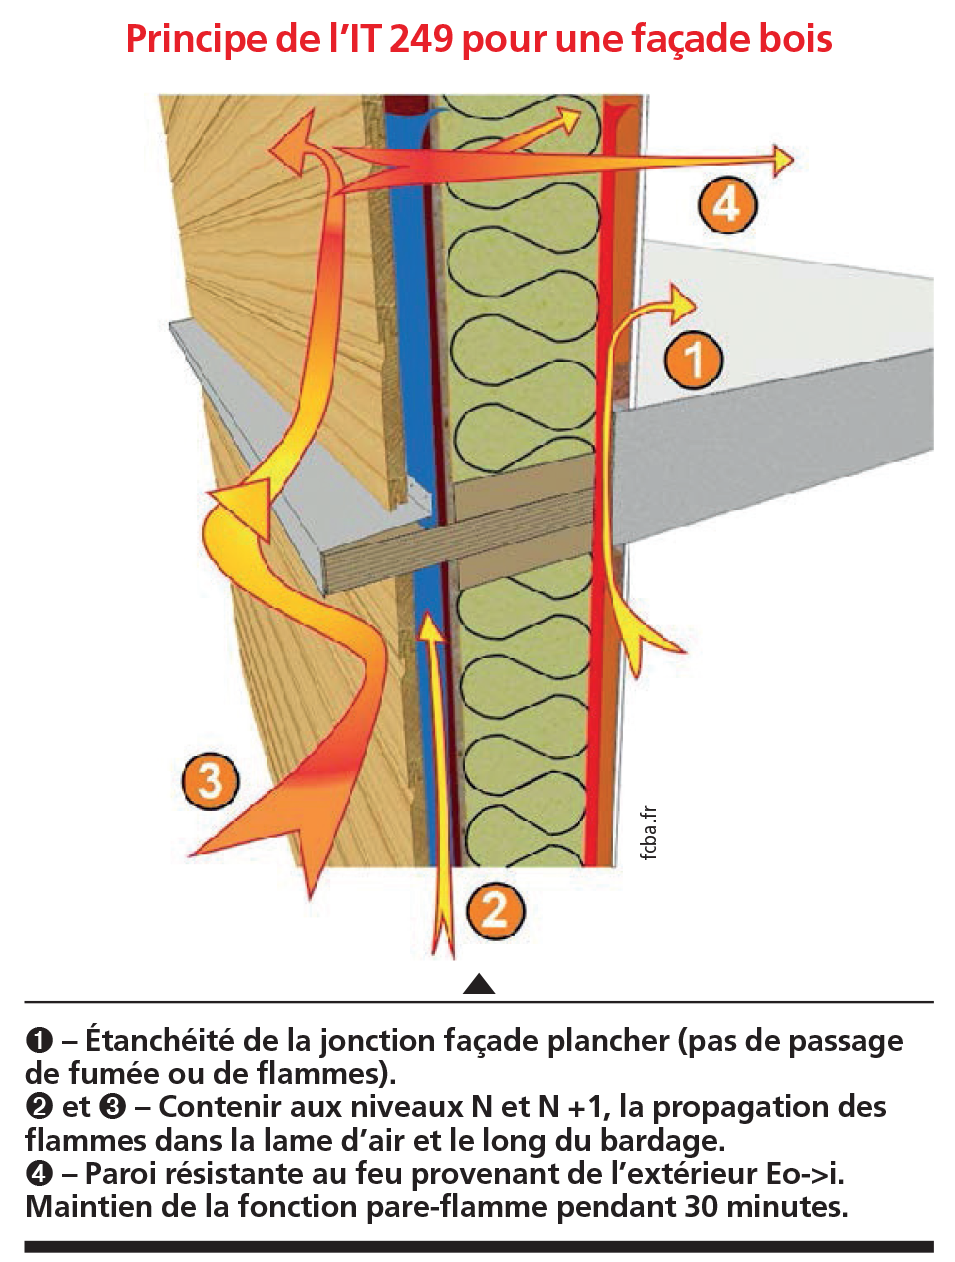 Principe de l'IT249 pour une façade bois - Crédit: fcba.fr